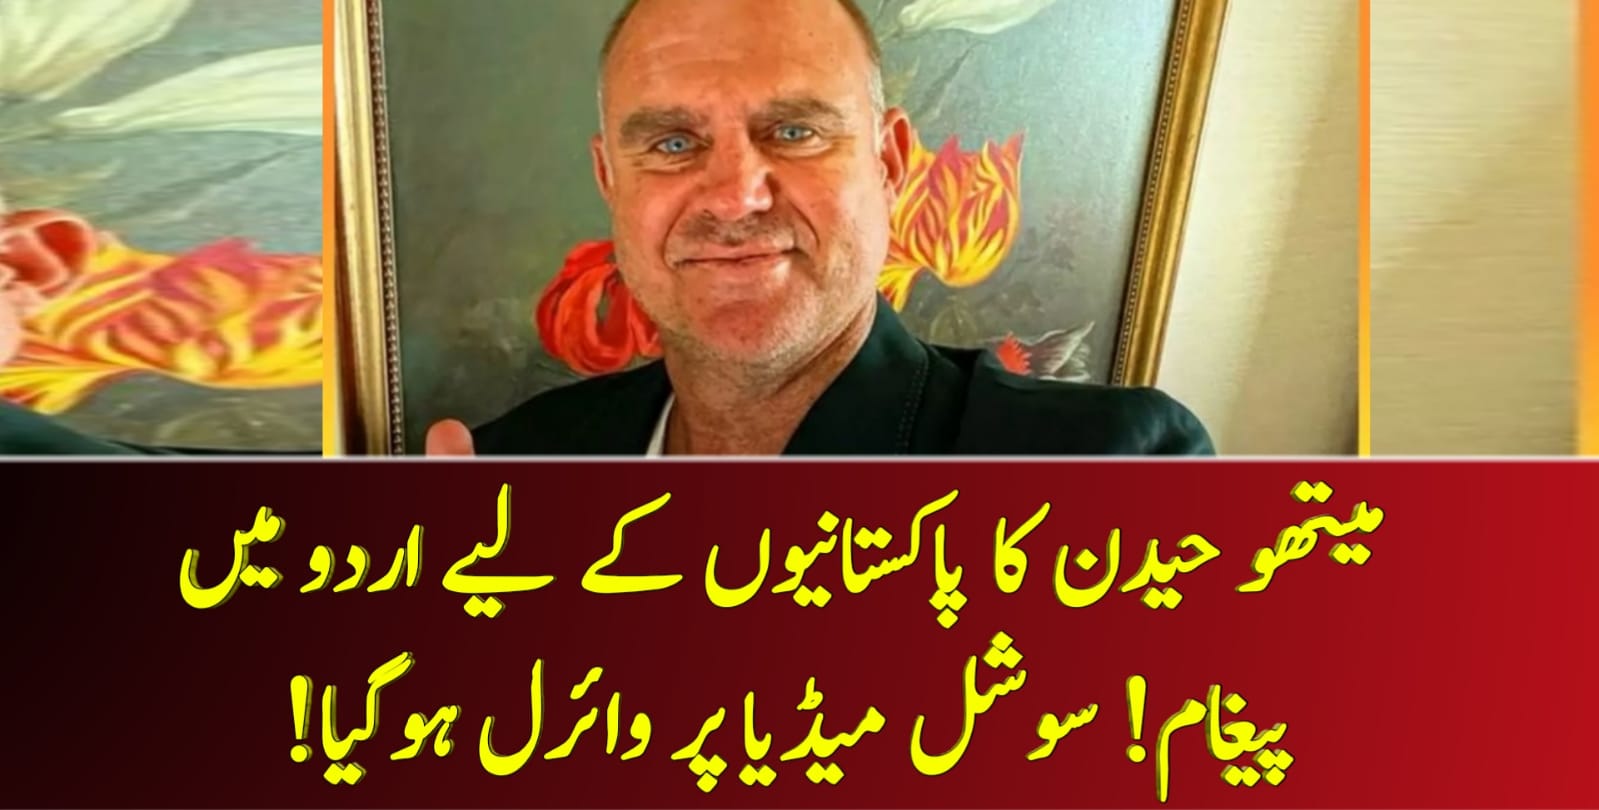 You are currently viewing میتھو حیدن کا پاکستانیوں کے لیے اردو میں پیغام! سوشل میڈیا پر وائرل ہوگیا!